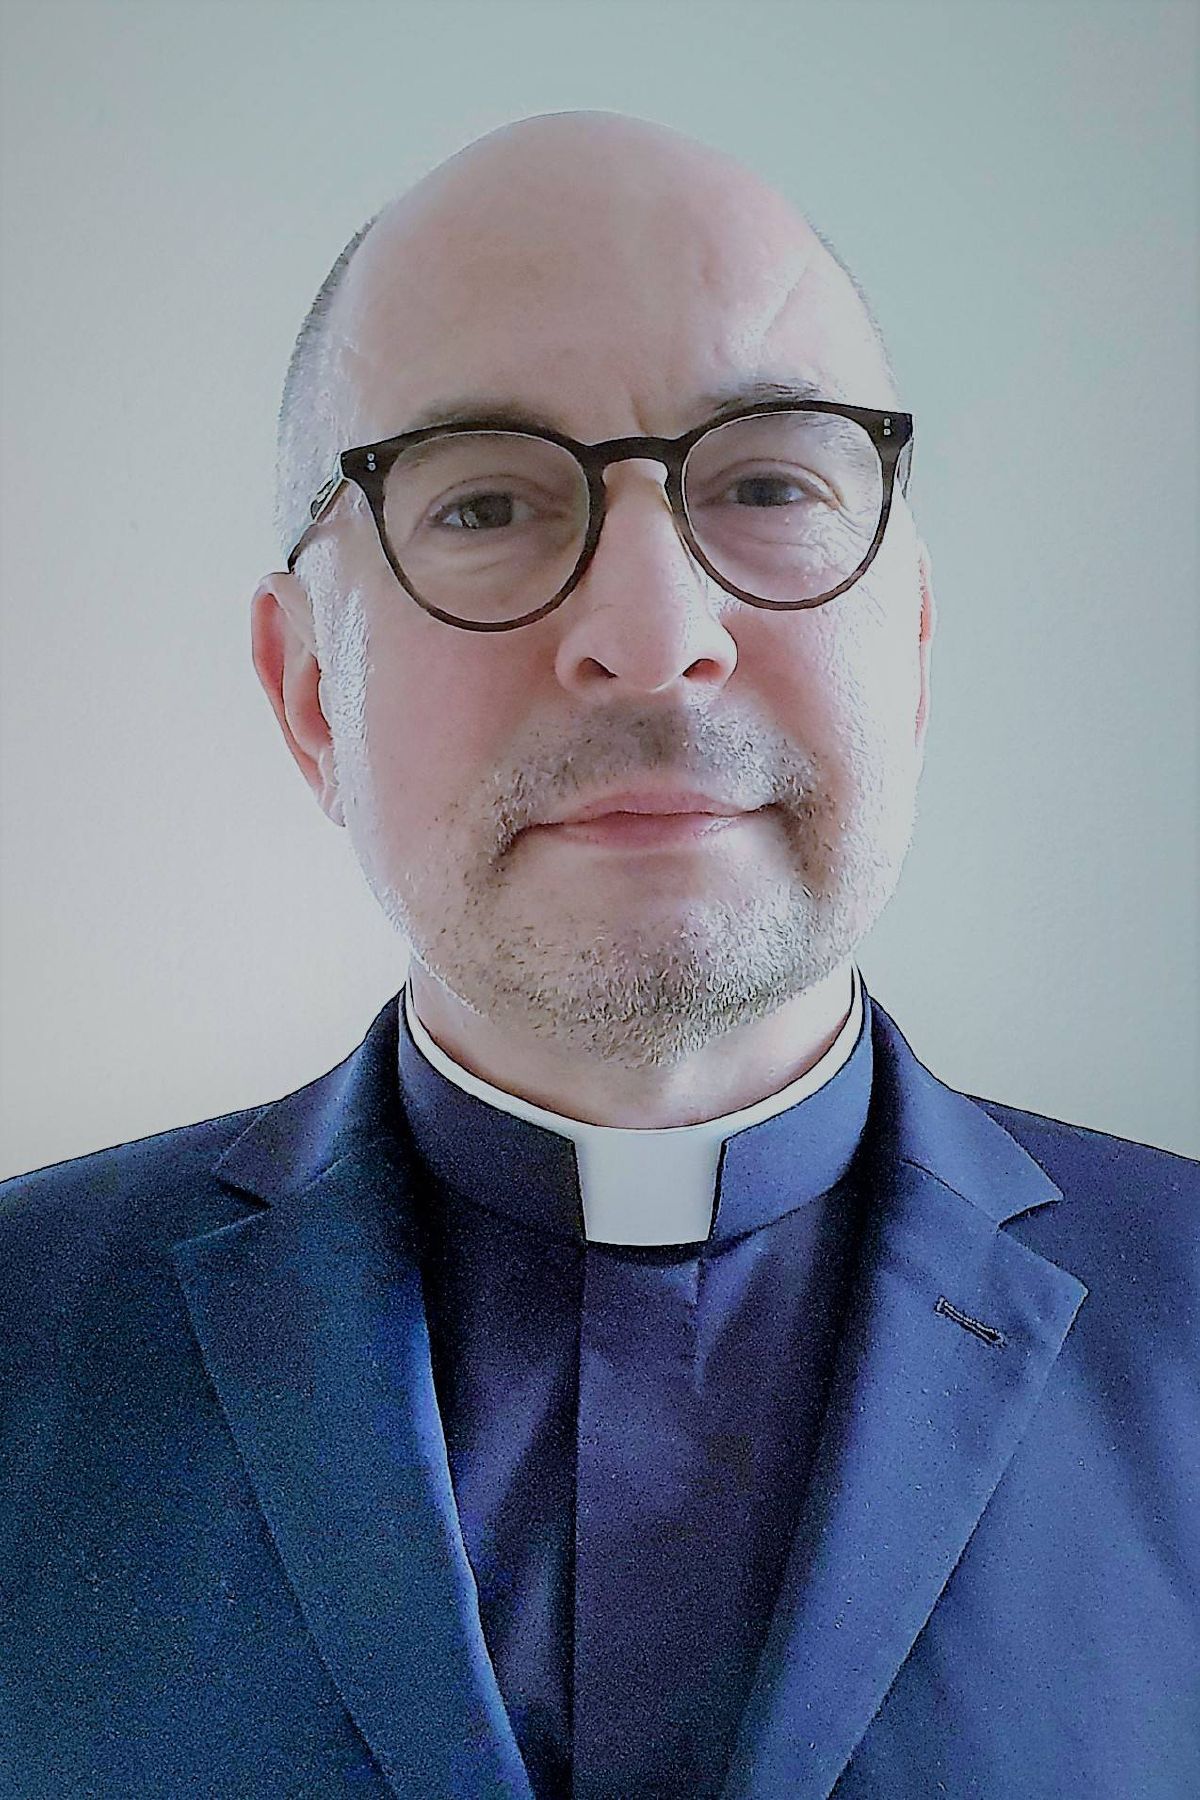 Pfarrer Cwik Profil